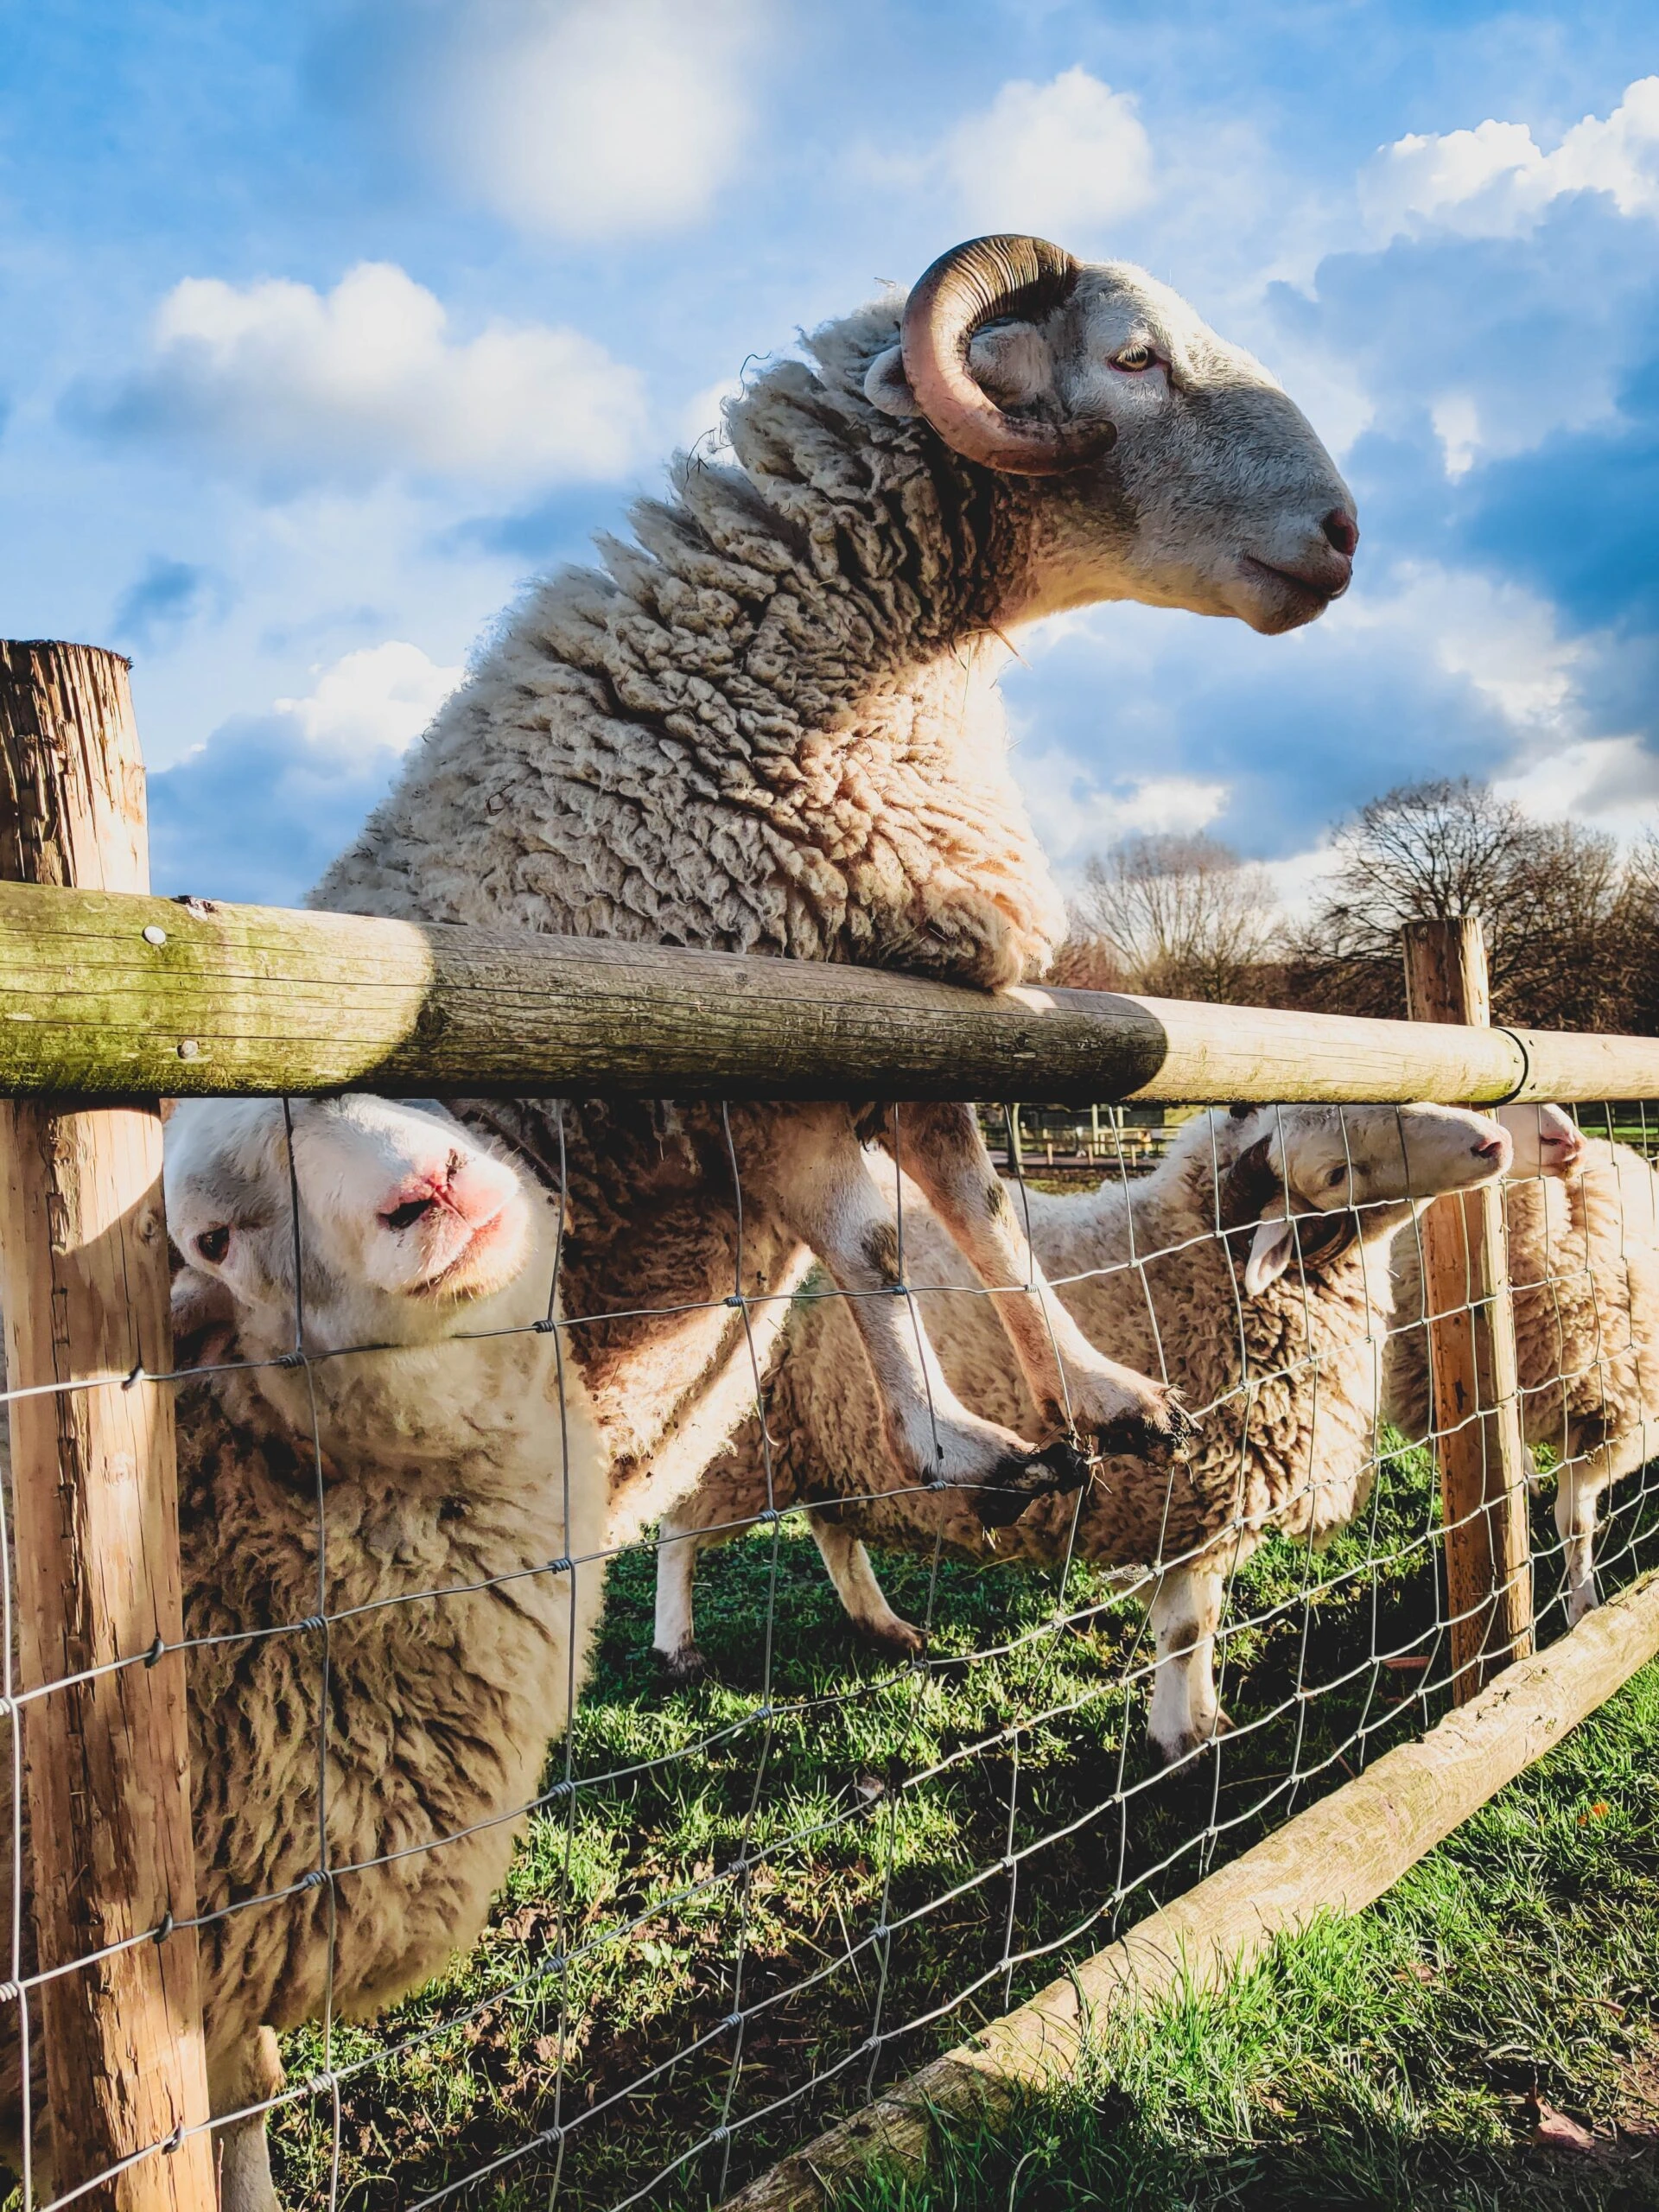 migle-siauciulyte- Image of Sheep at Fence on Unsplash